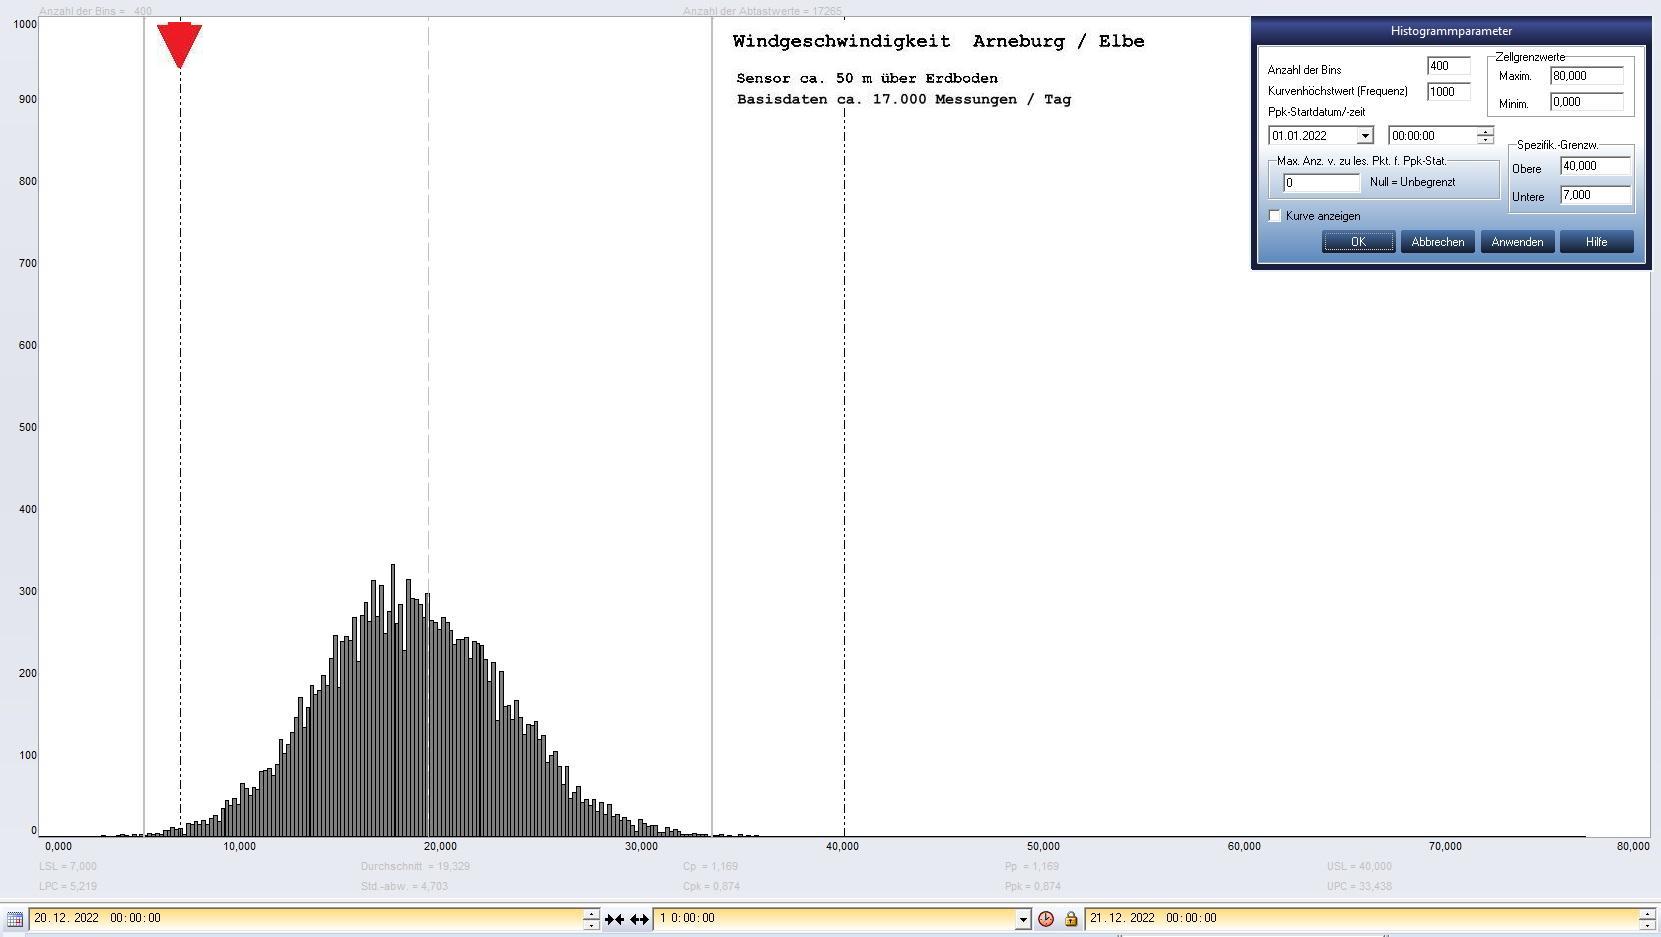 Arneburg Tages-Histogramm Winddaten, 20.12.2022
  Histogramm, Sensor auf Gebude, ca. 50 m ber Erdboden, Basis: 5s-Aufzeichnung